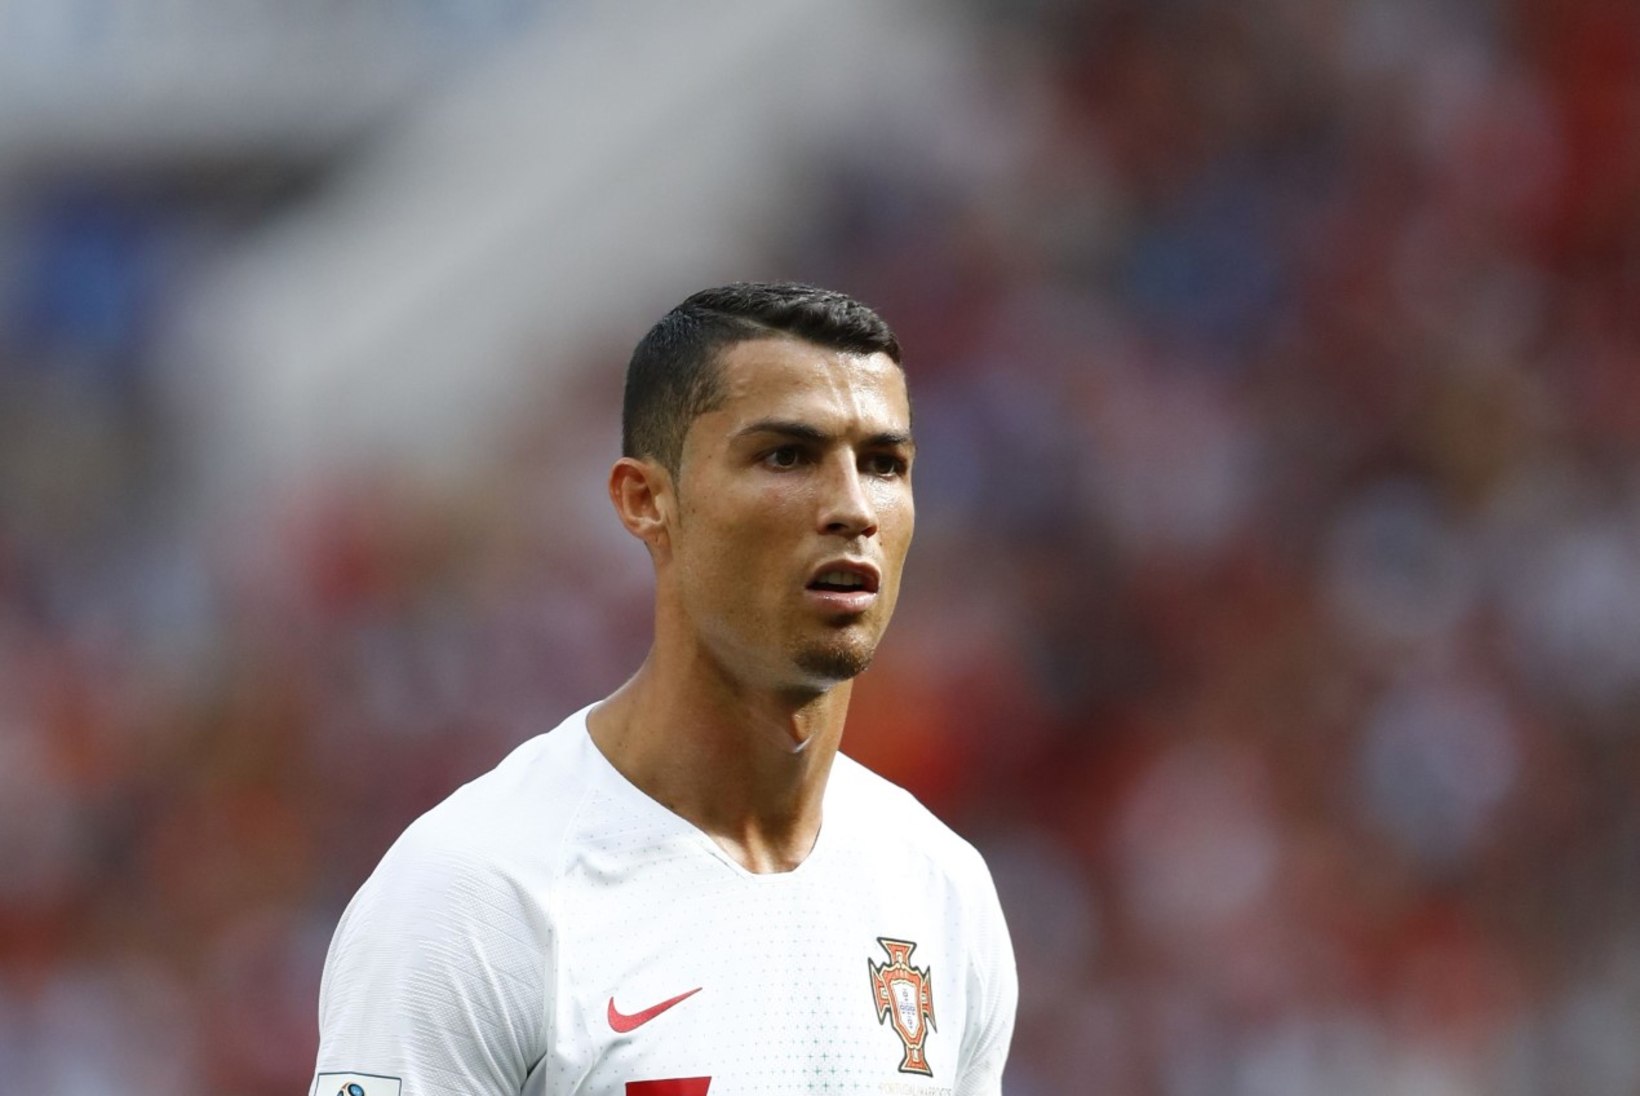 VIDEO: vaata, kuidas reageeris Cristiano Ronaldo, kui Iraani koondise fännid akna alla lärmama tulid